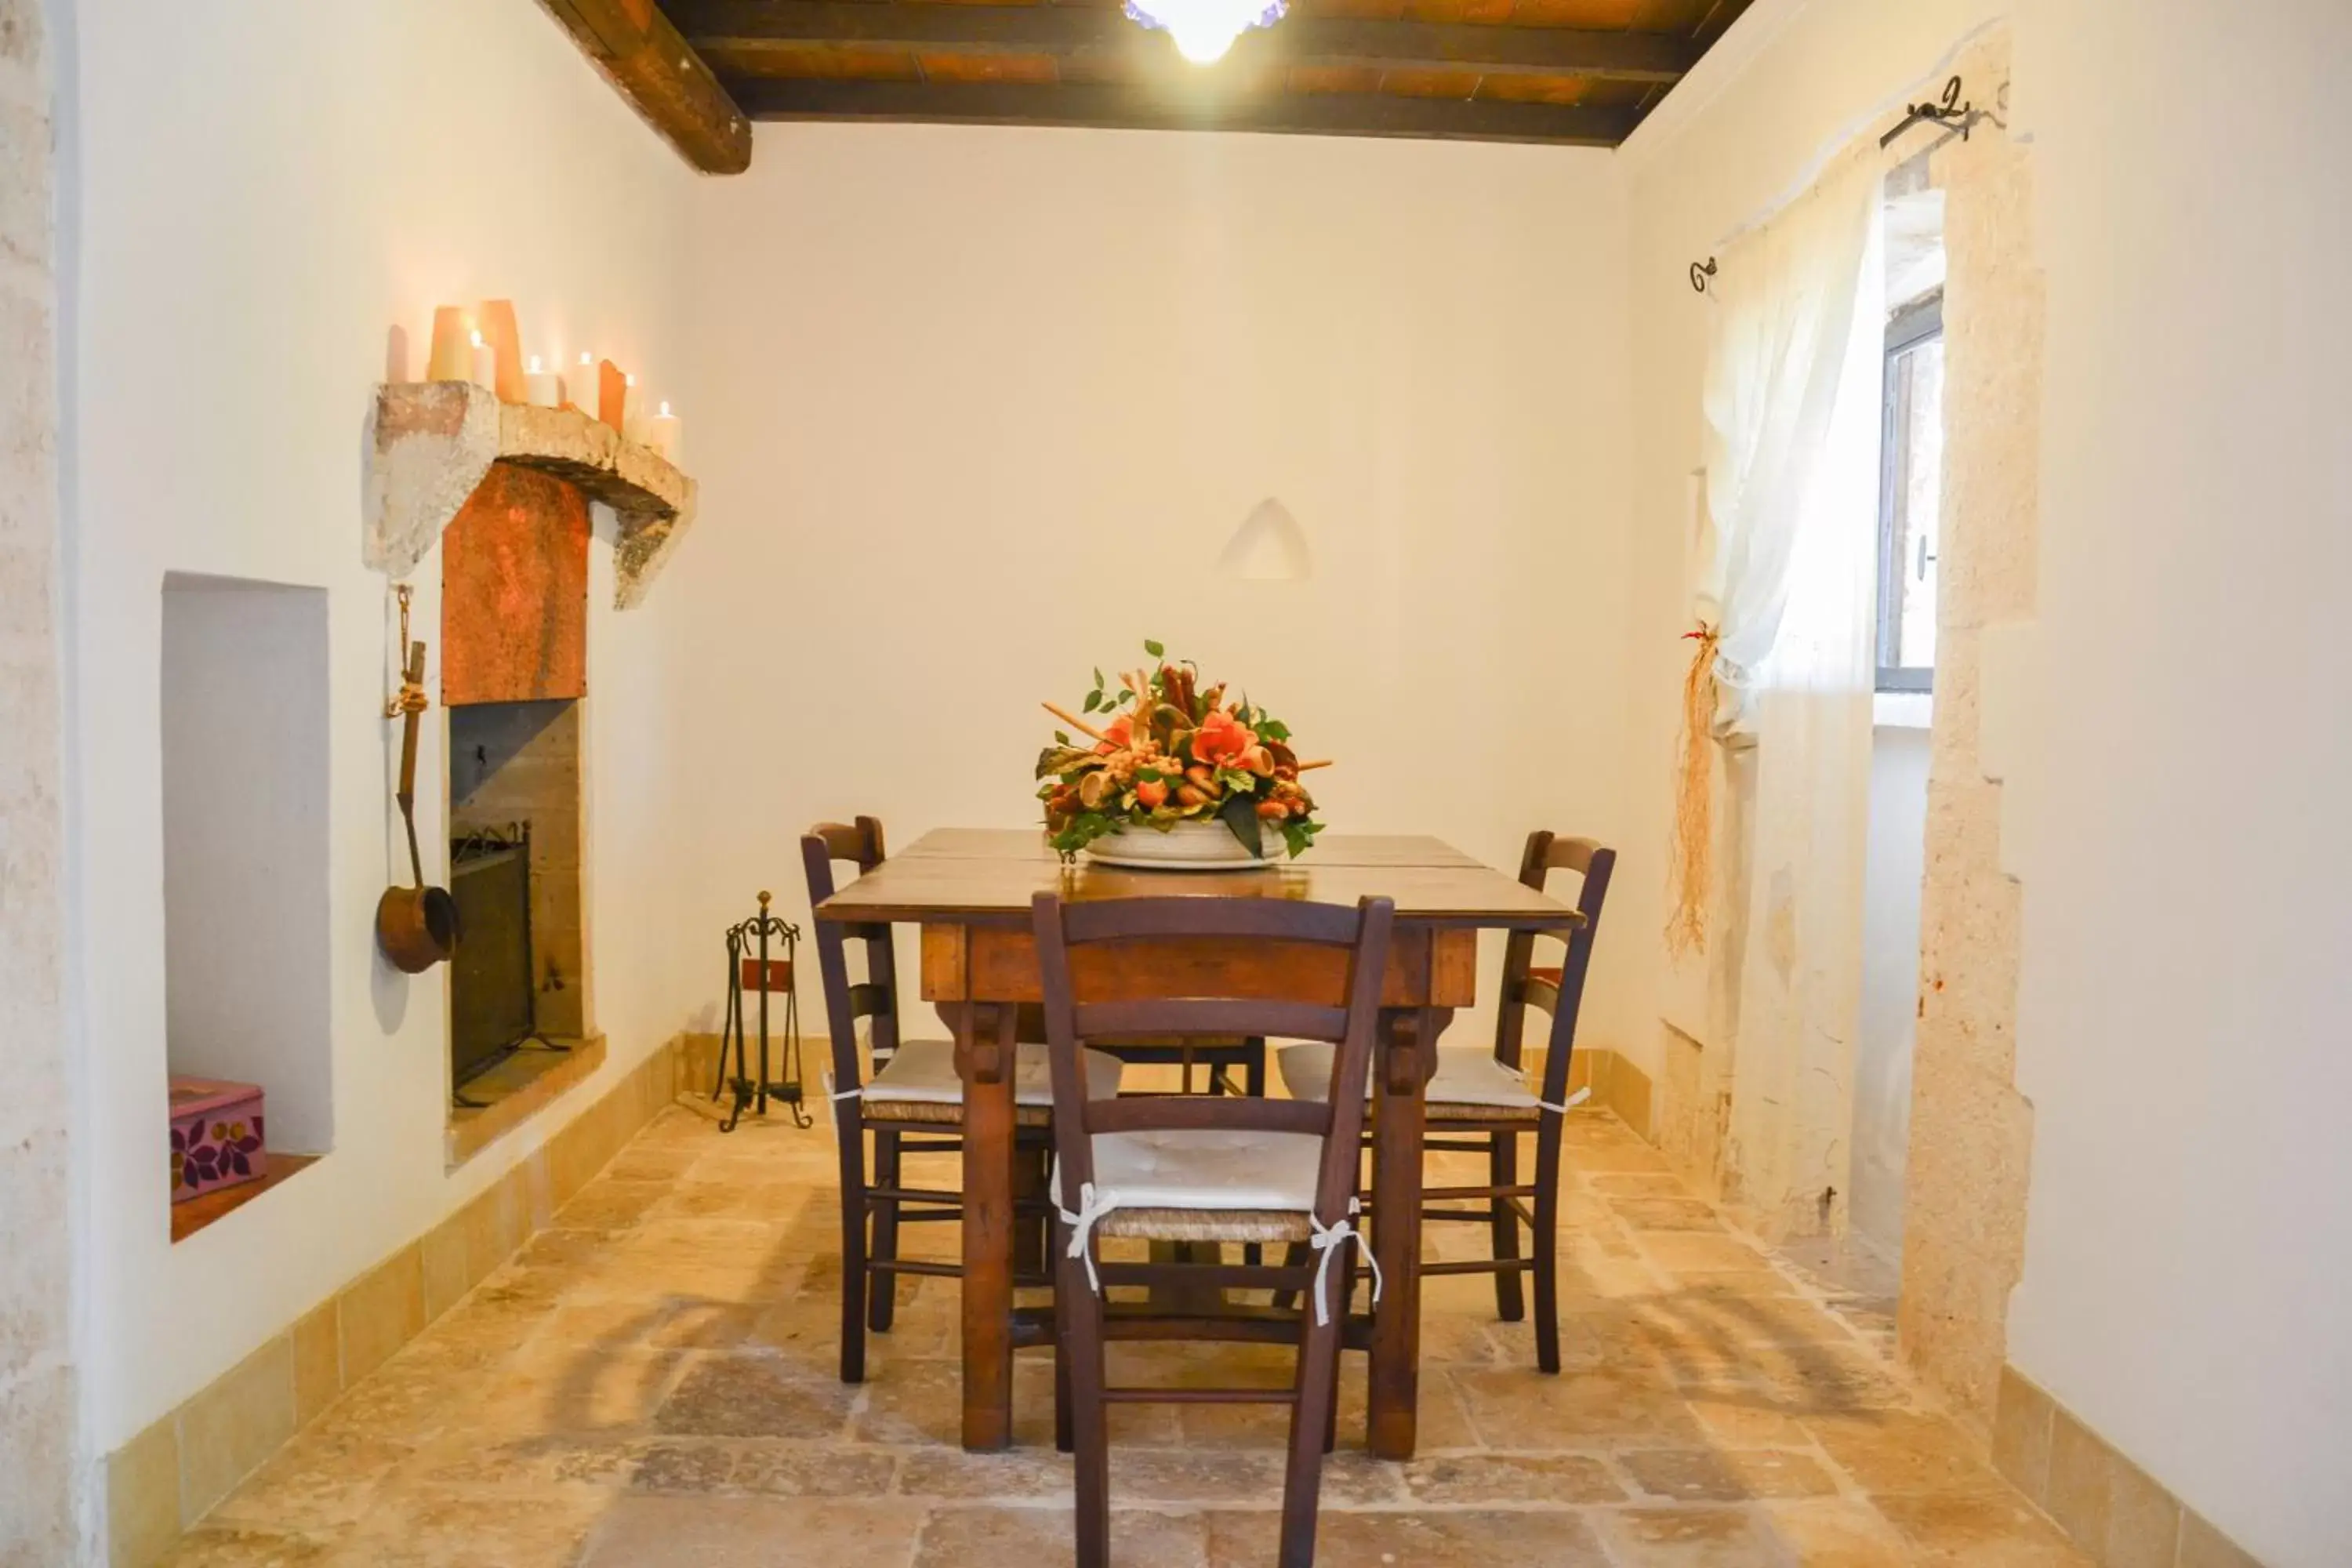 Living room, Dining Area in Agriturismo Masseria Alberotanza